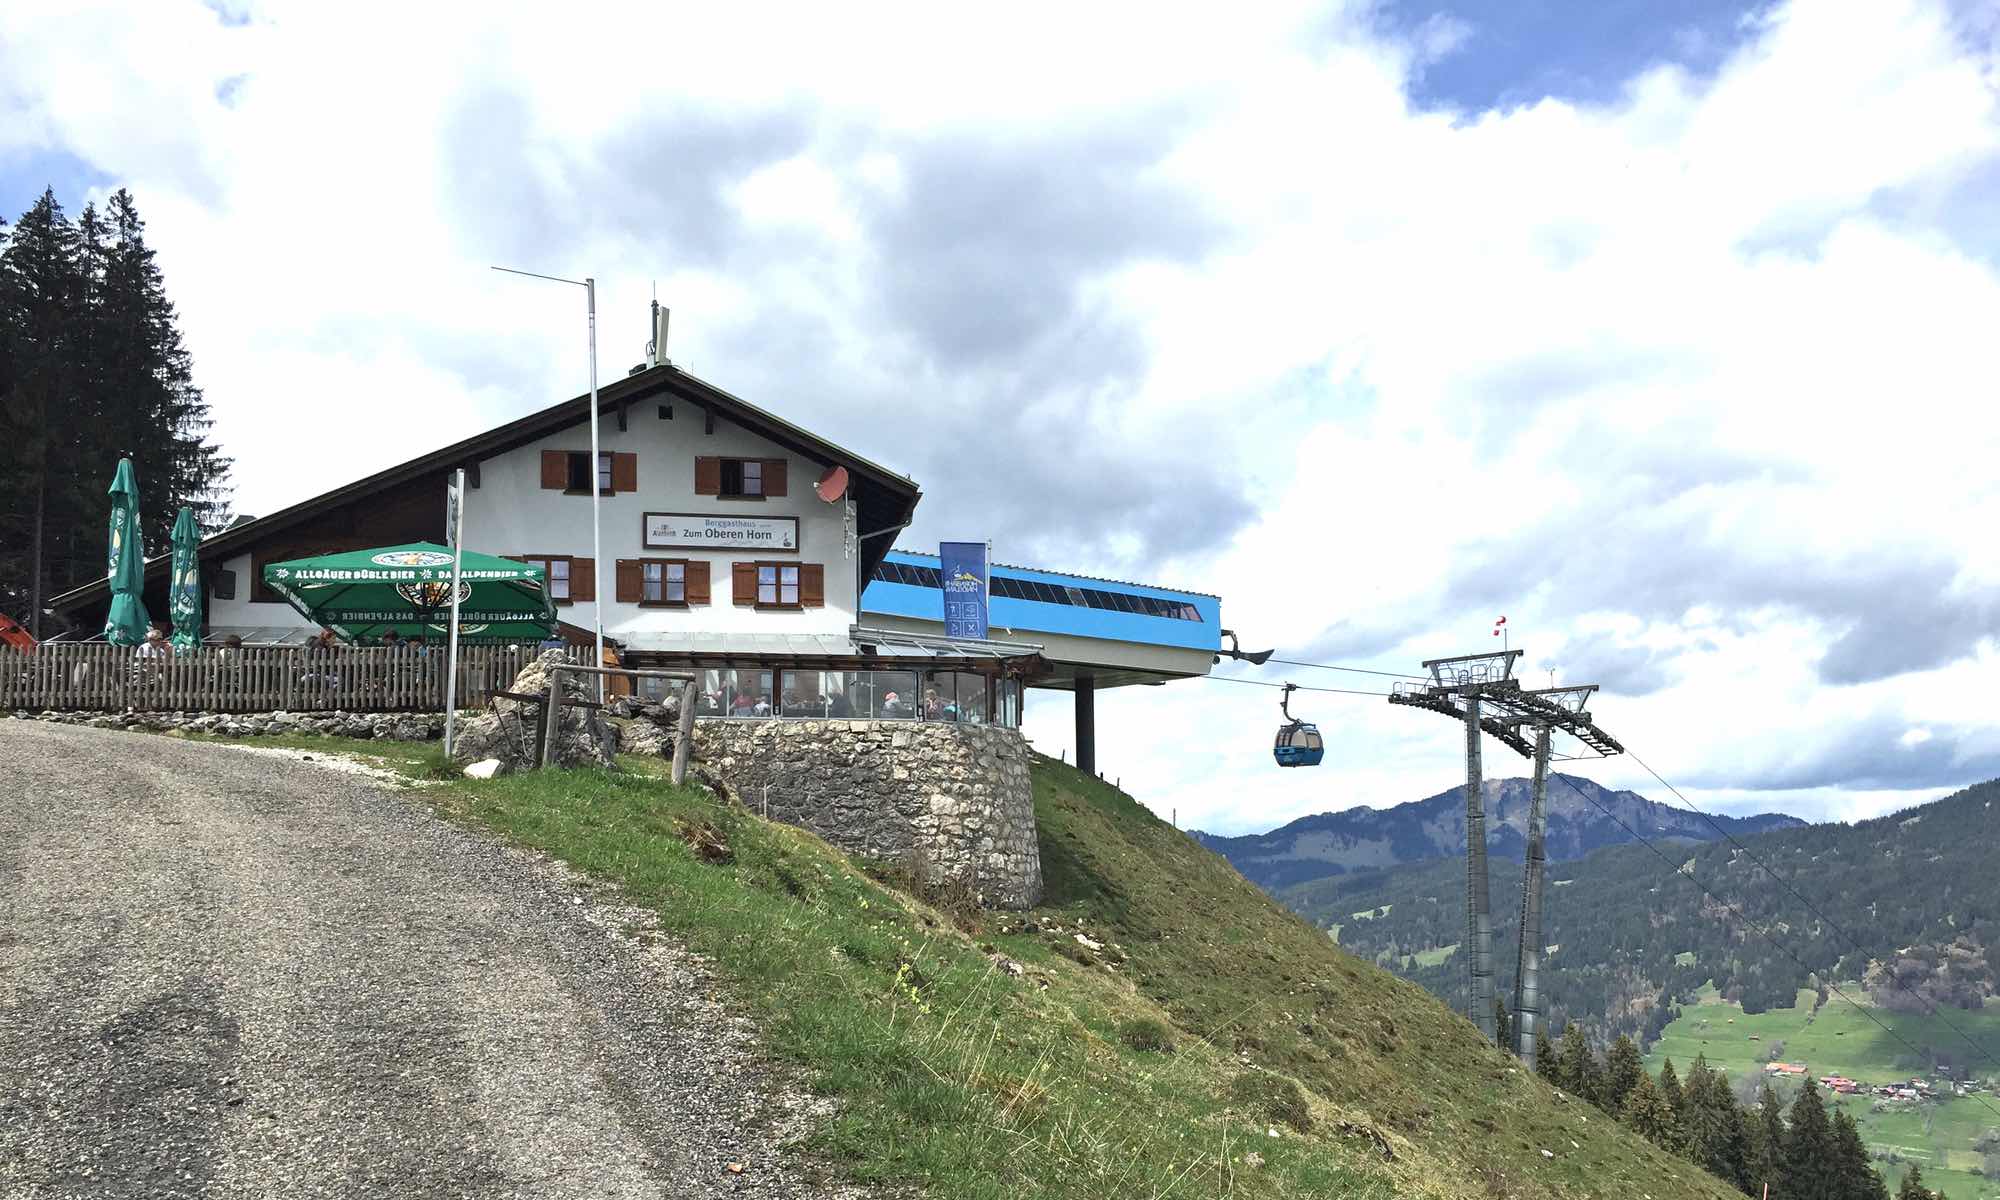 Aussenansicht vom Berggasthaus zum oberen Horn Bad Hindelang an der Bergstation der Hornbahn - ©Sylvia Becker